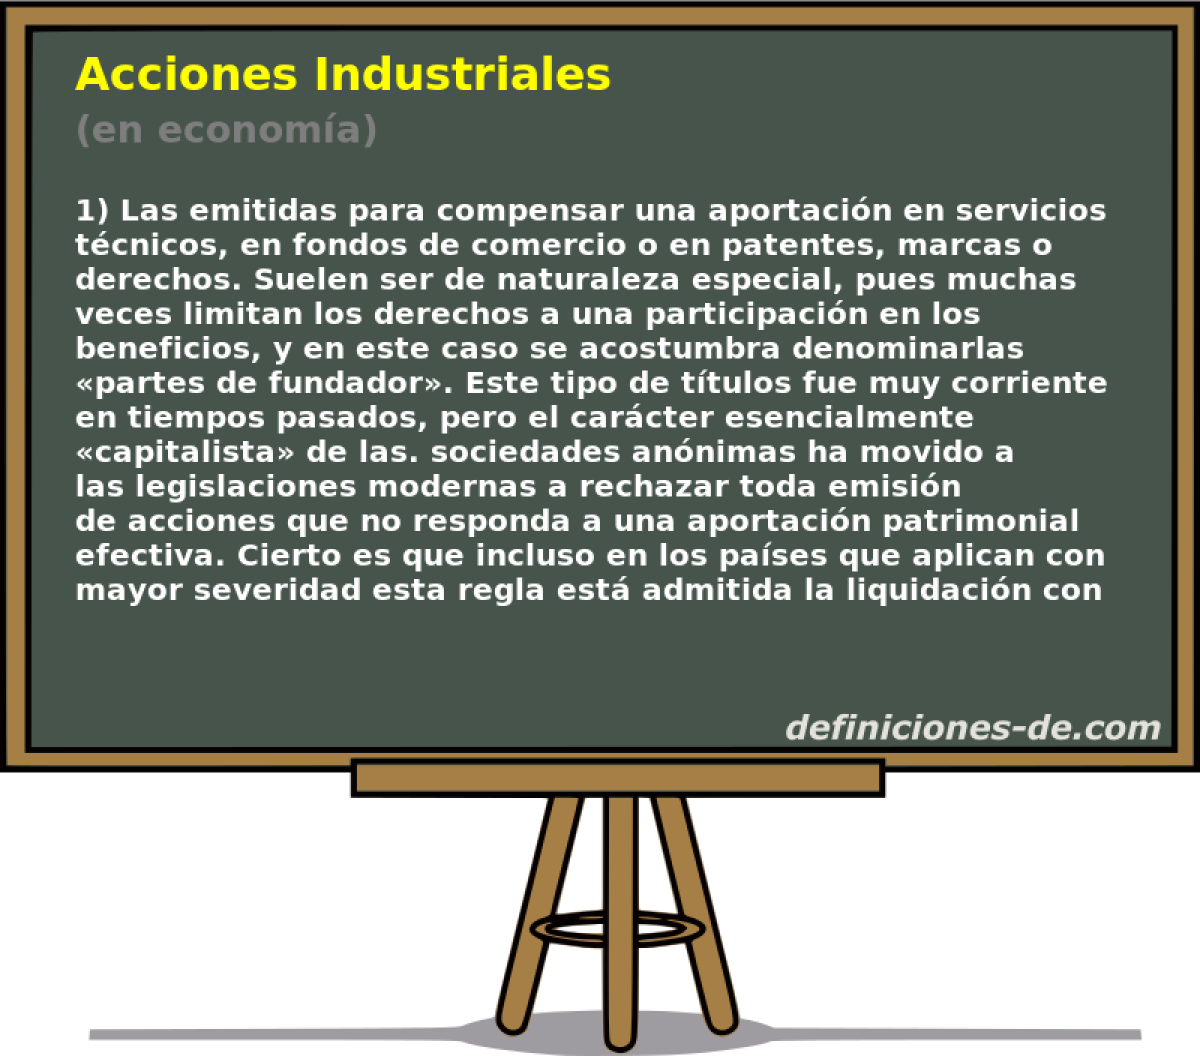 Acciones Industriales (en economa)